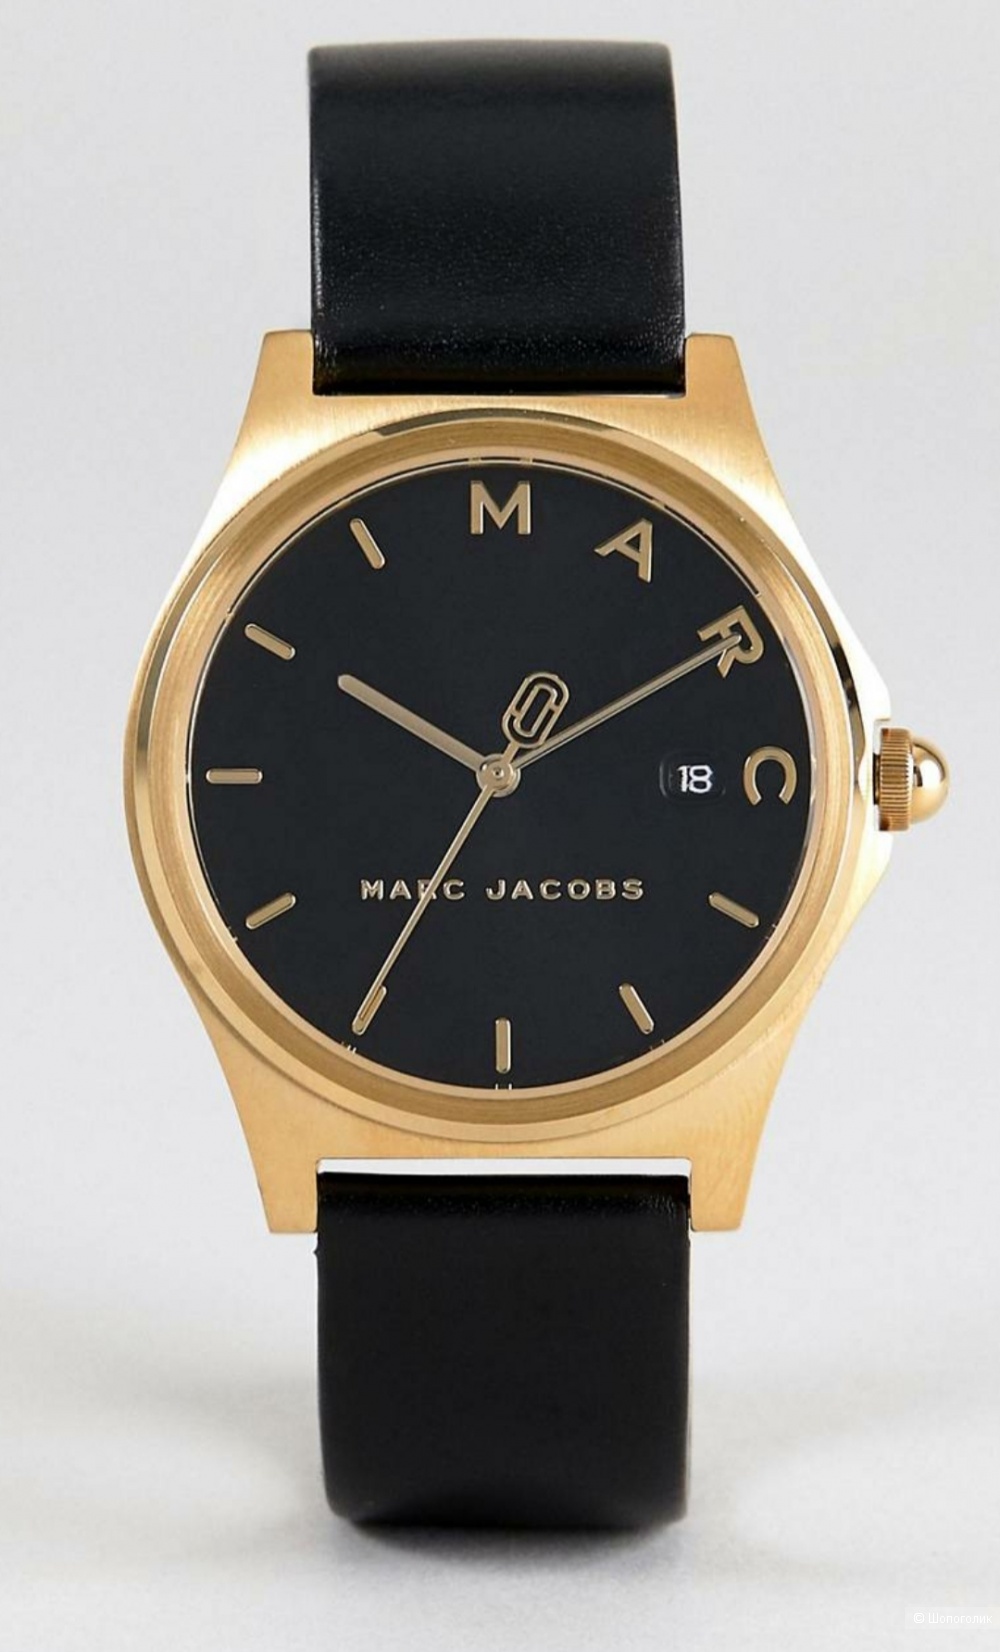 Наручные часы от Marc Jacobs (MJ1608 Henry)